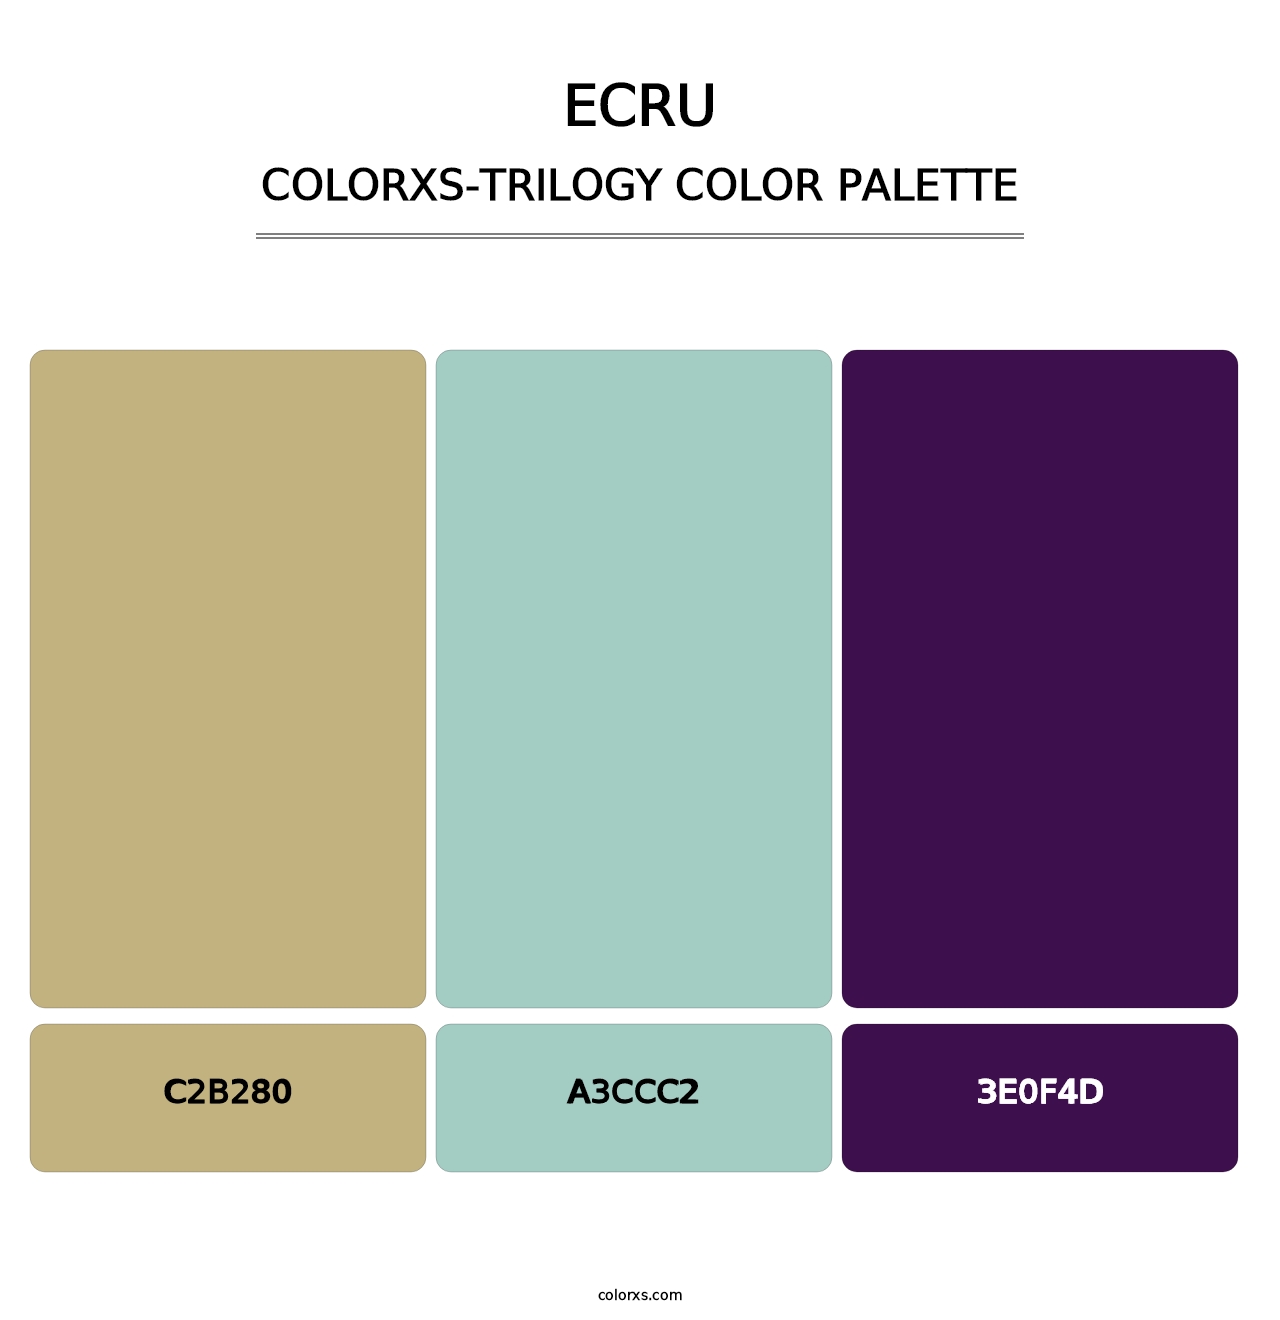 Ecru - Colorxs Trilogy Palette